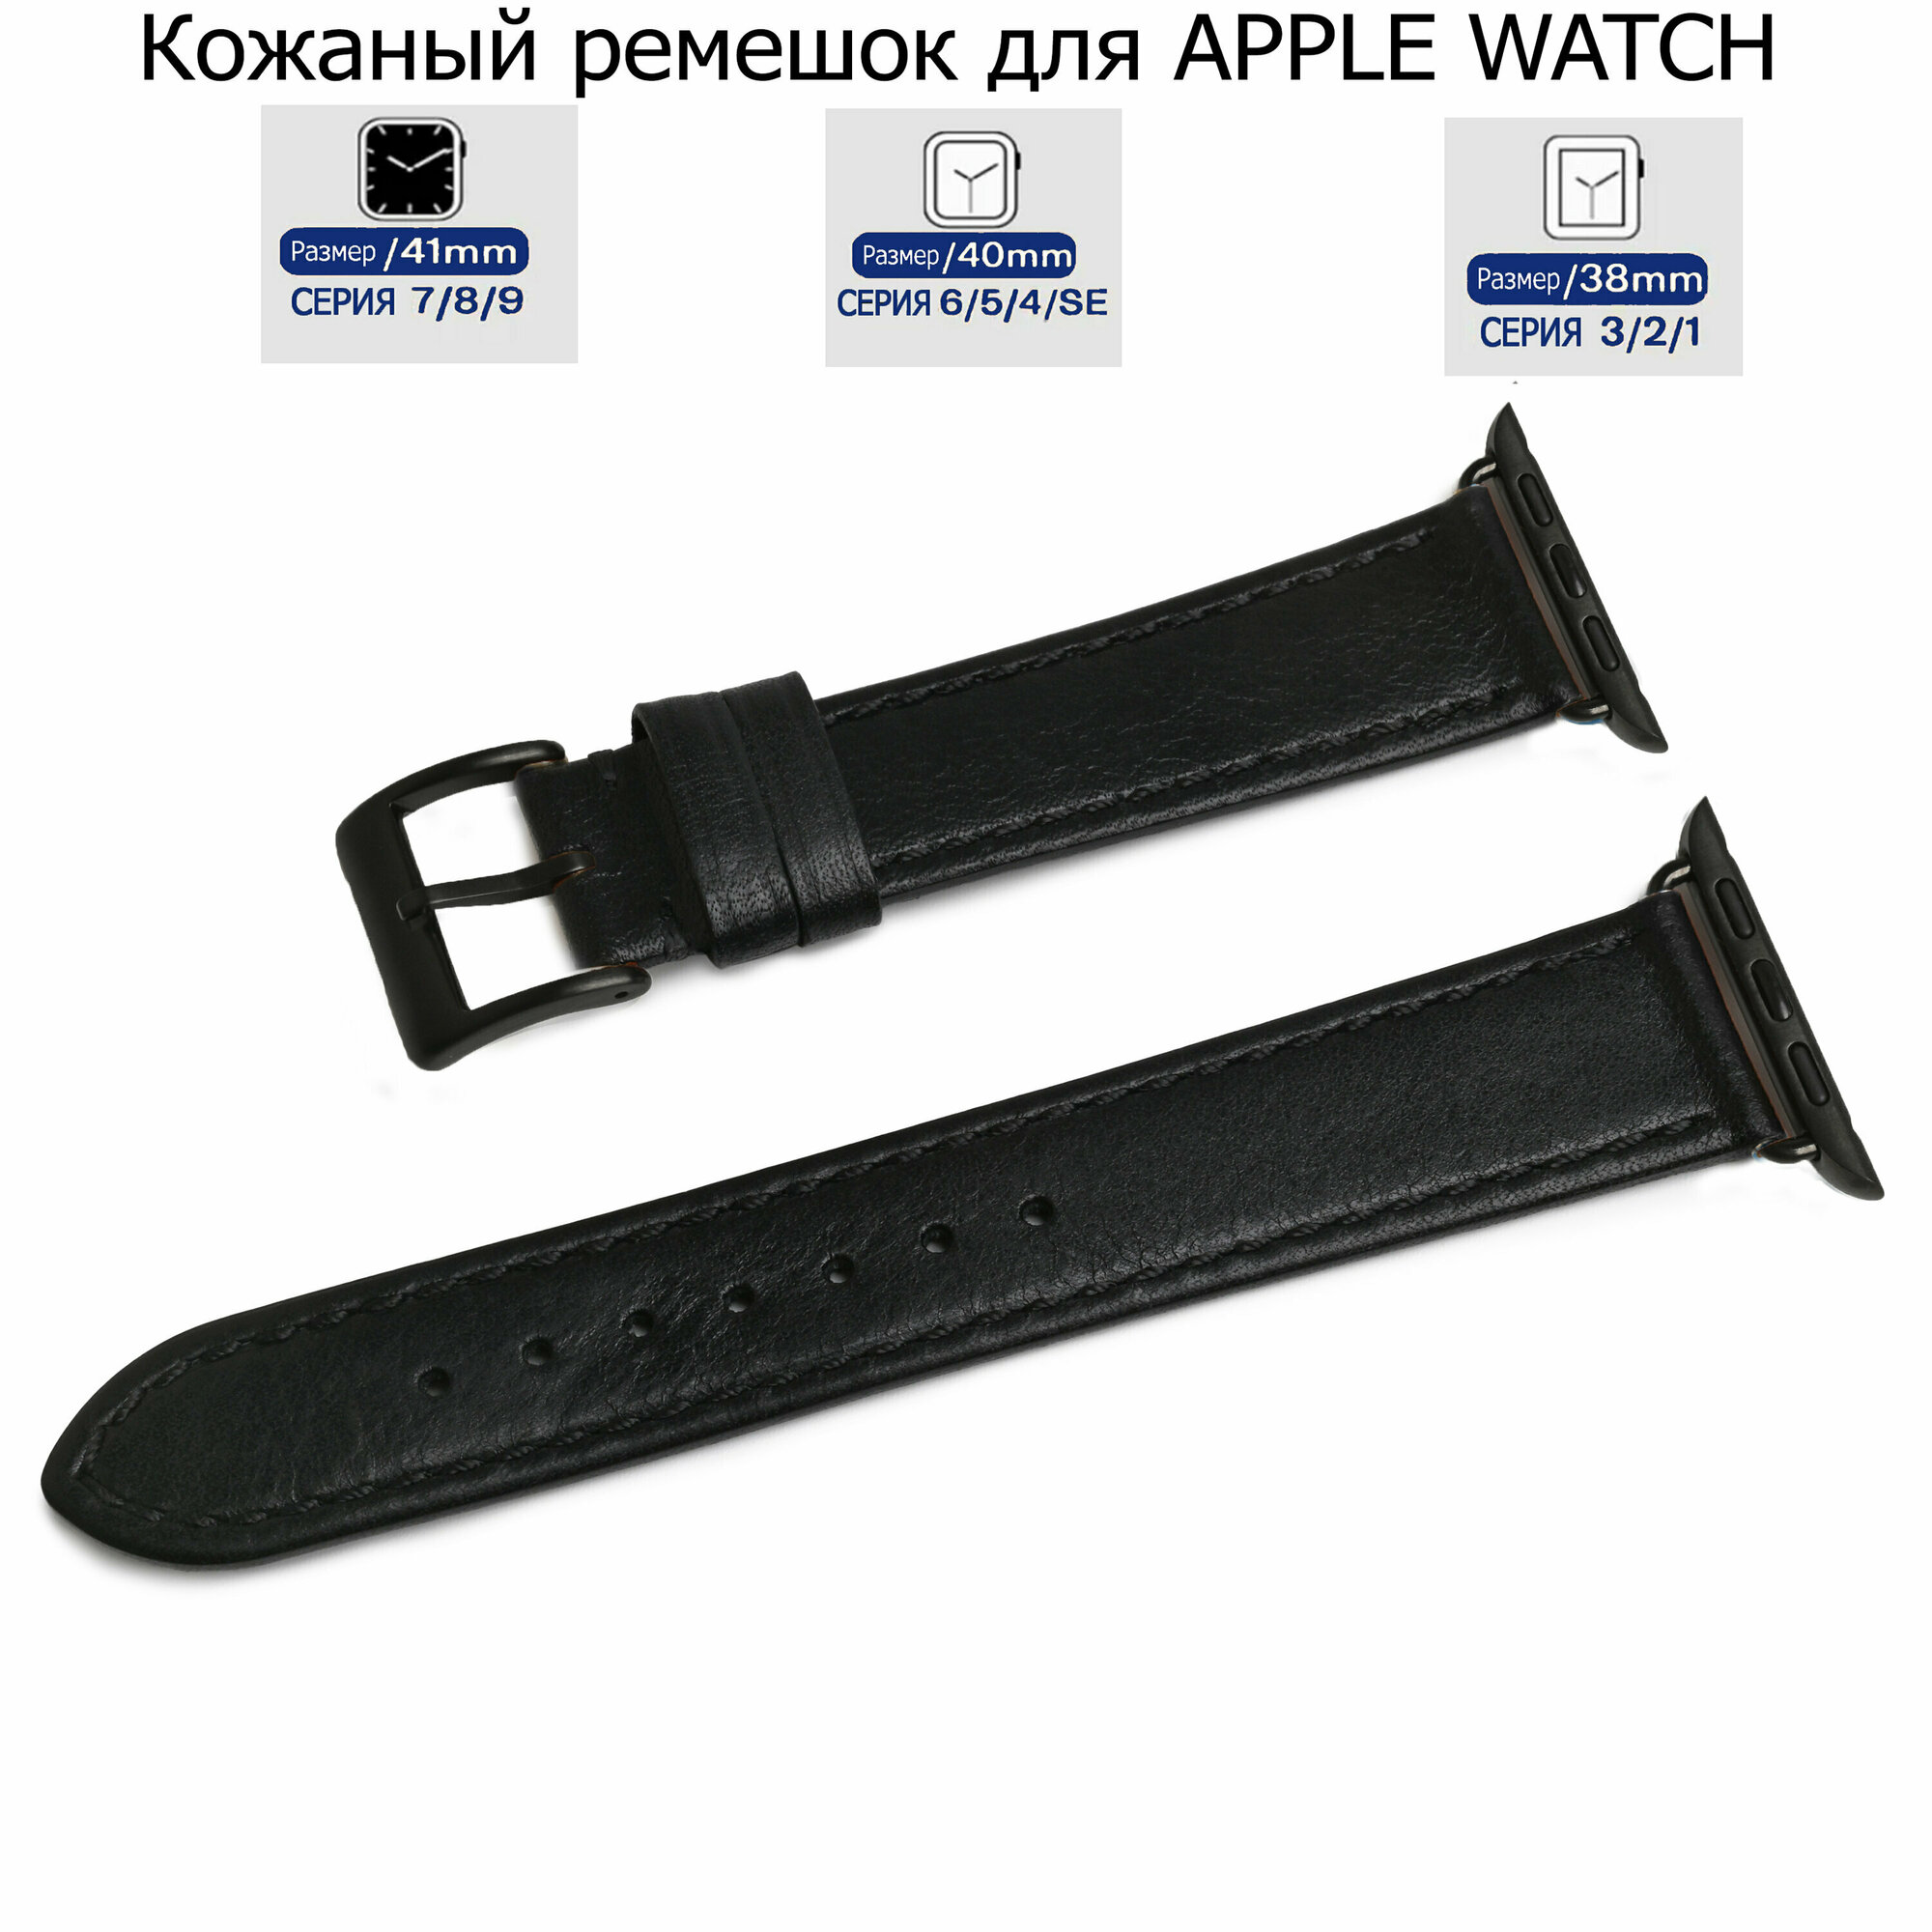 Ремешок для Apple Watch с диагональю 38/40/41 натуральная кожа черный, черная нитка, переходник черного цвета